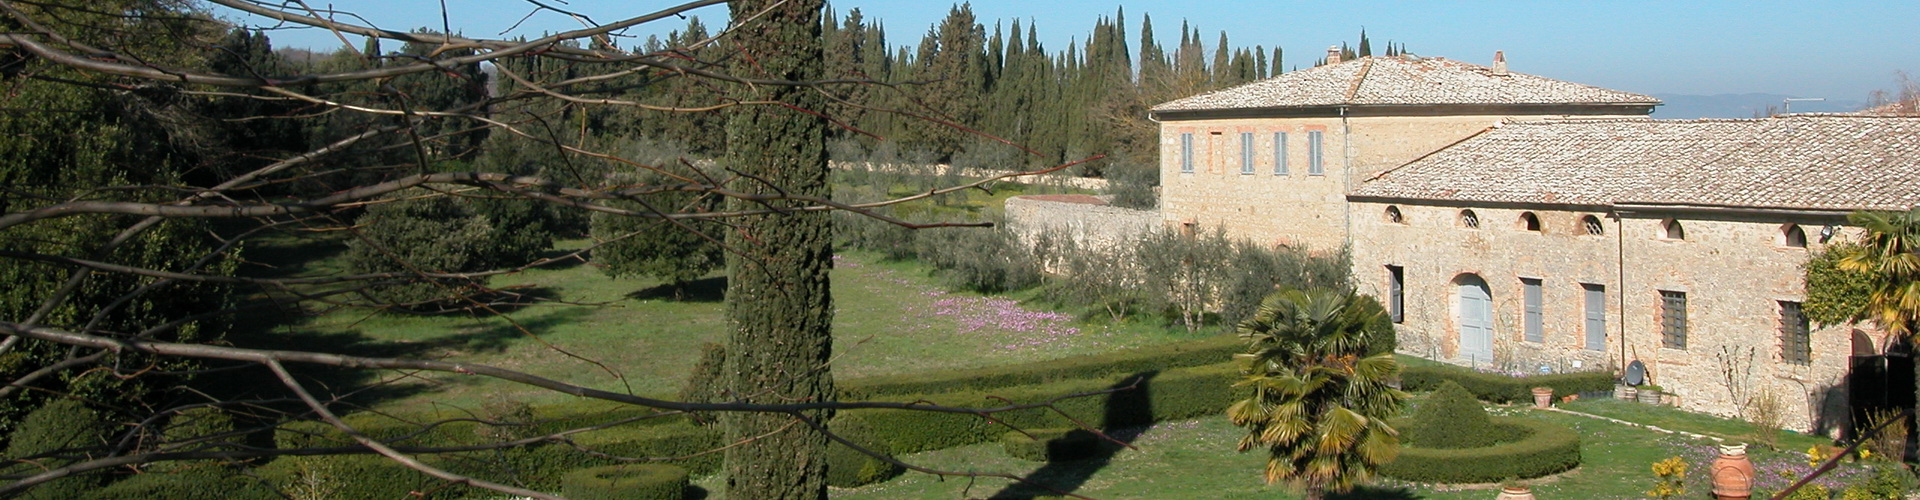 villa Ballati a Grotti